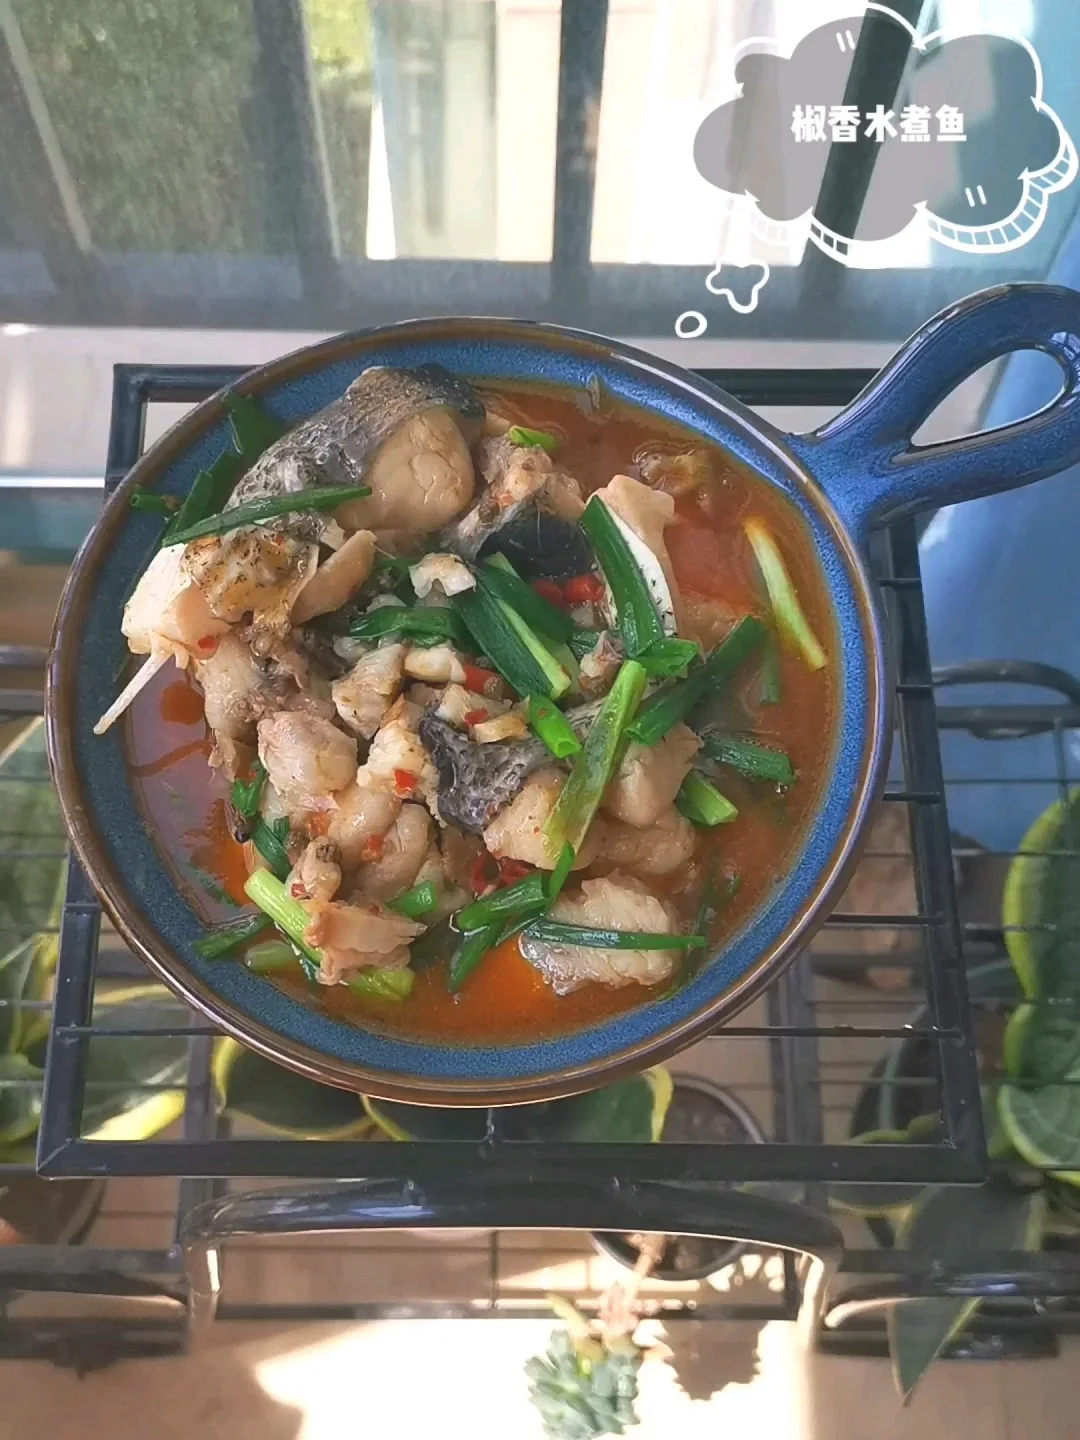 花椒鱼的做法-麻辣味煮菜谱